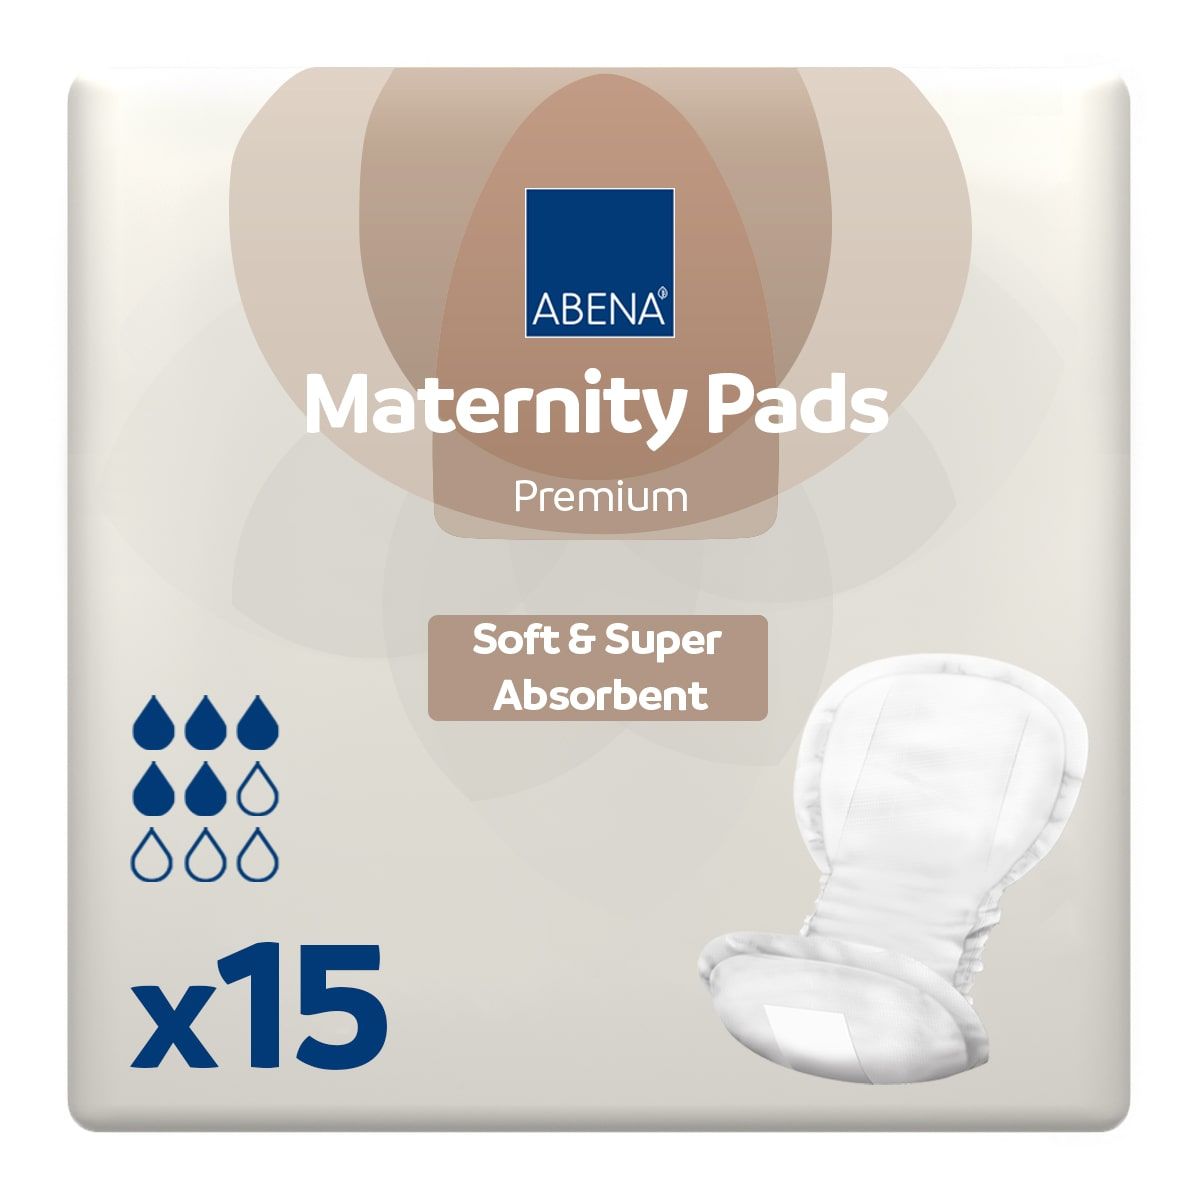 Abena Maternity Pads Premium (800ml) 15 Pack